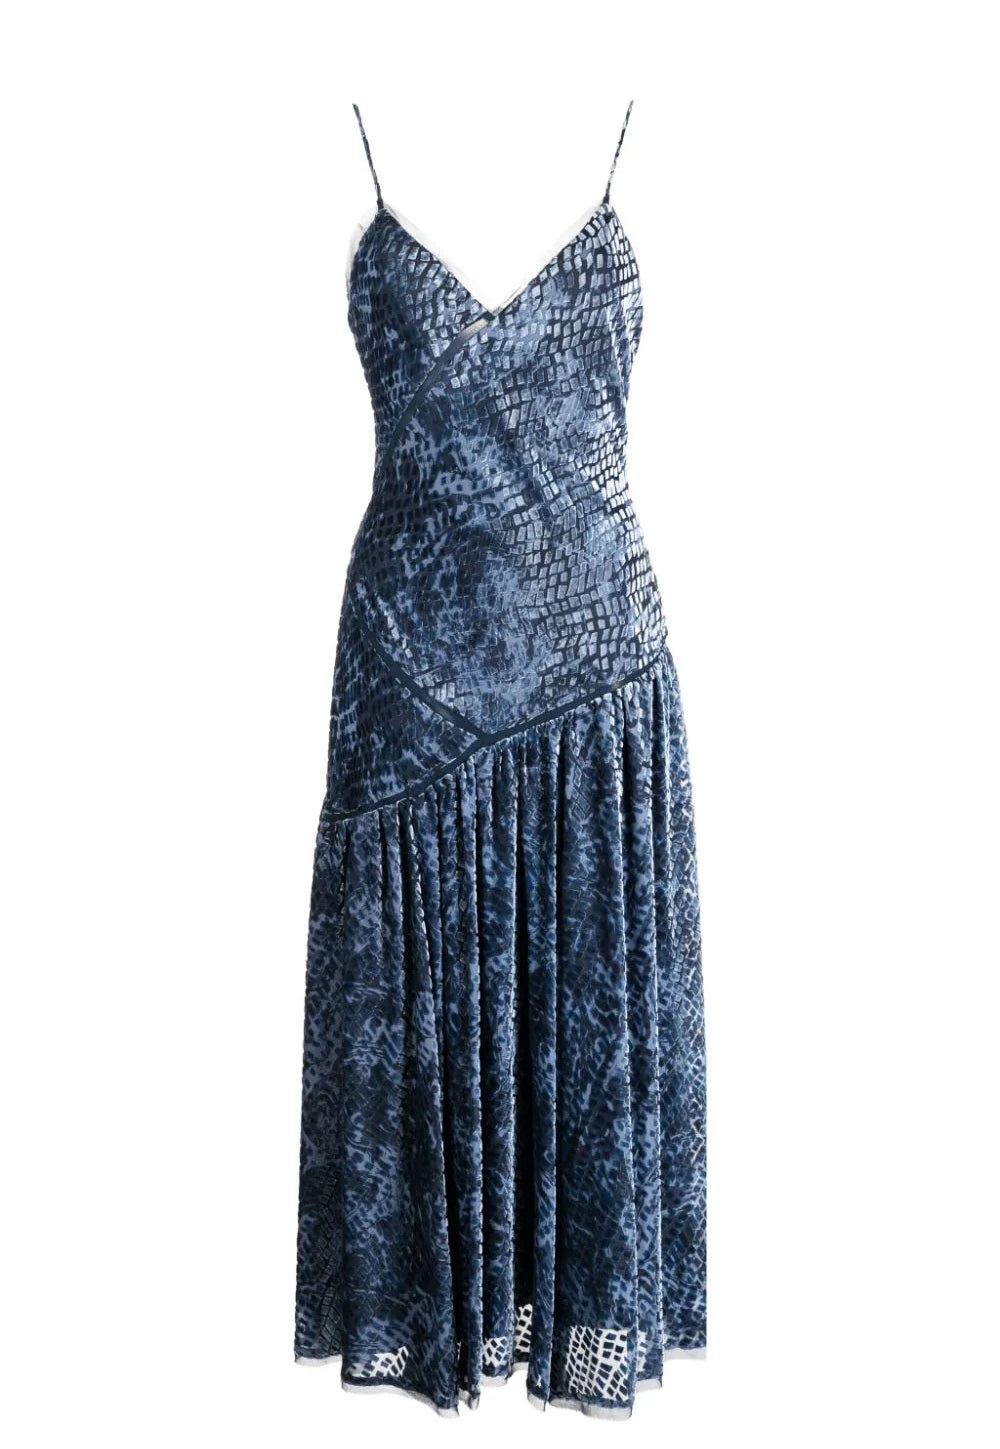 Elodie Dress - Marine sold by Angel Divine